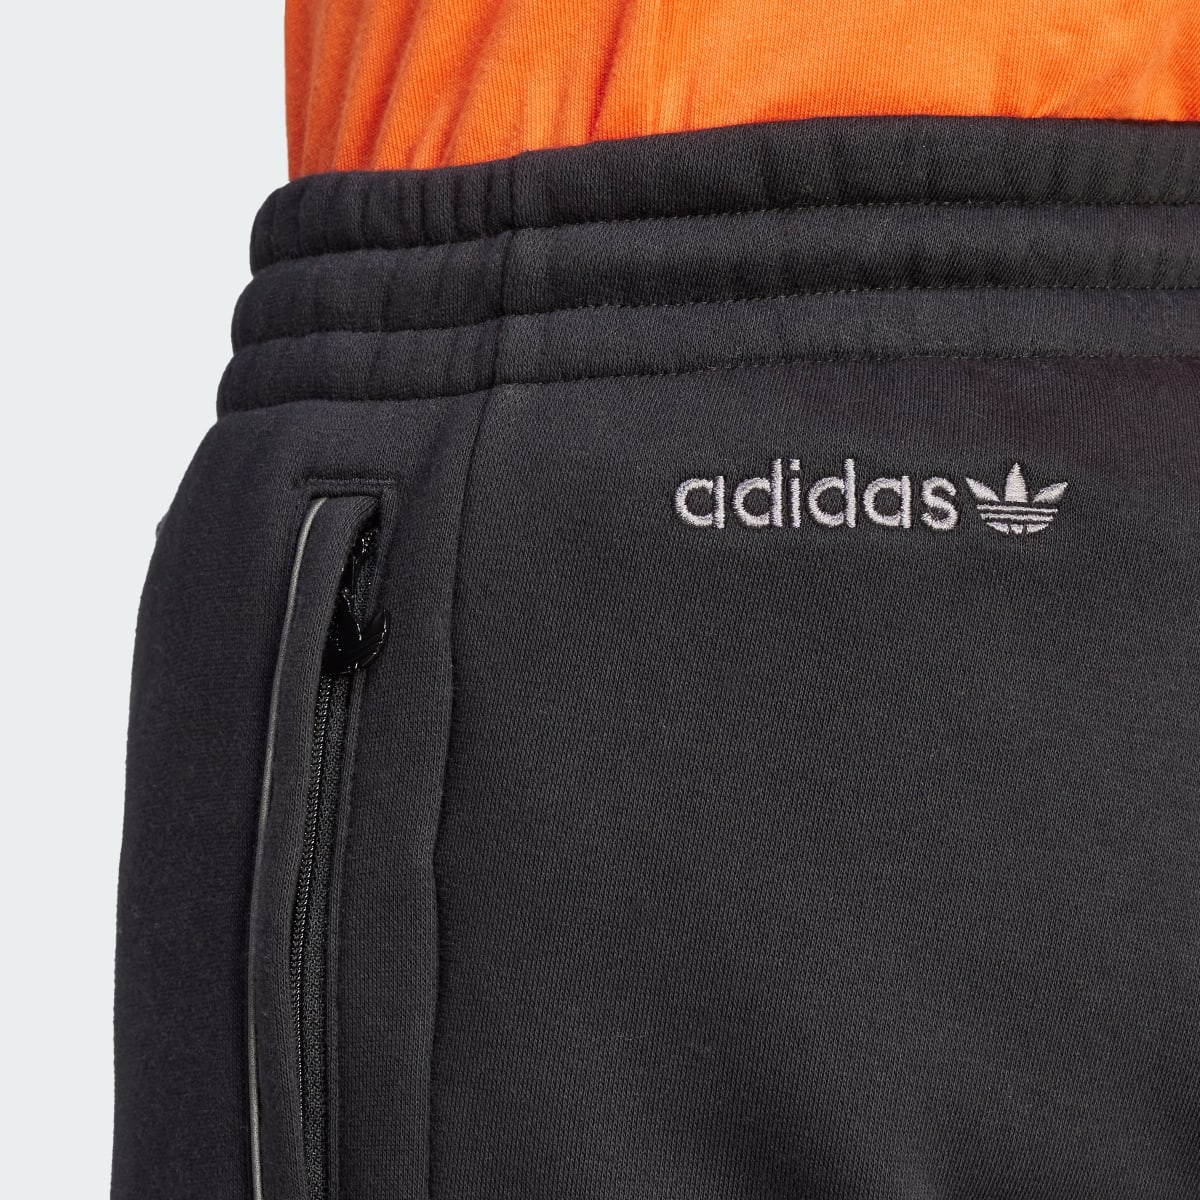 Adidas Adicolor Seasonal Reflective Sweat Pants. 6